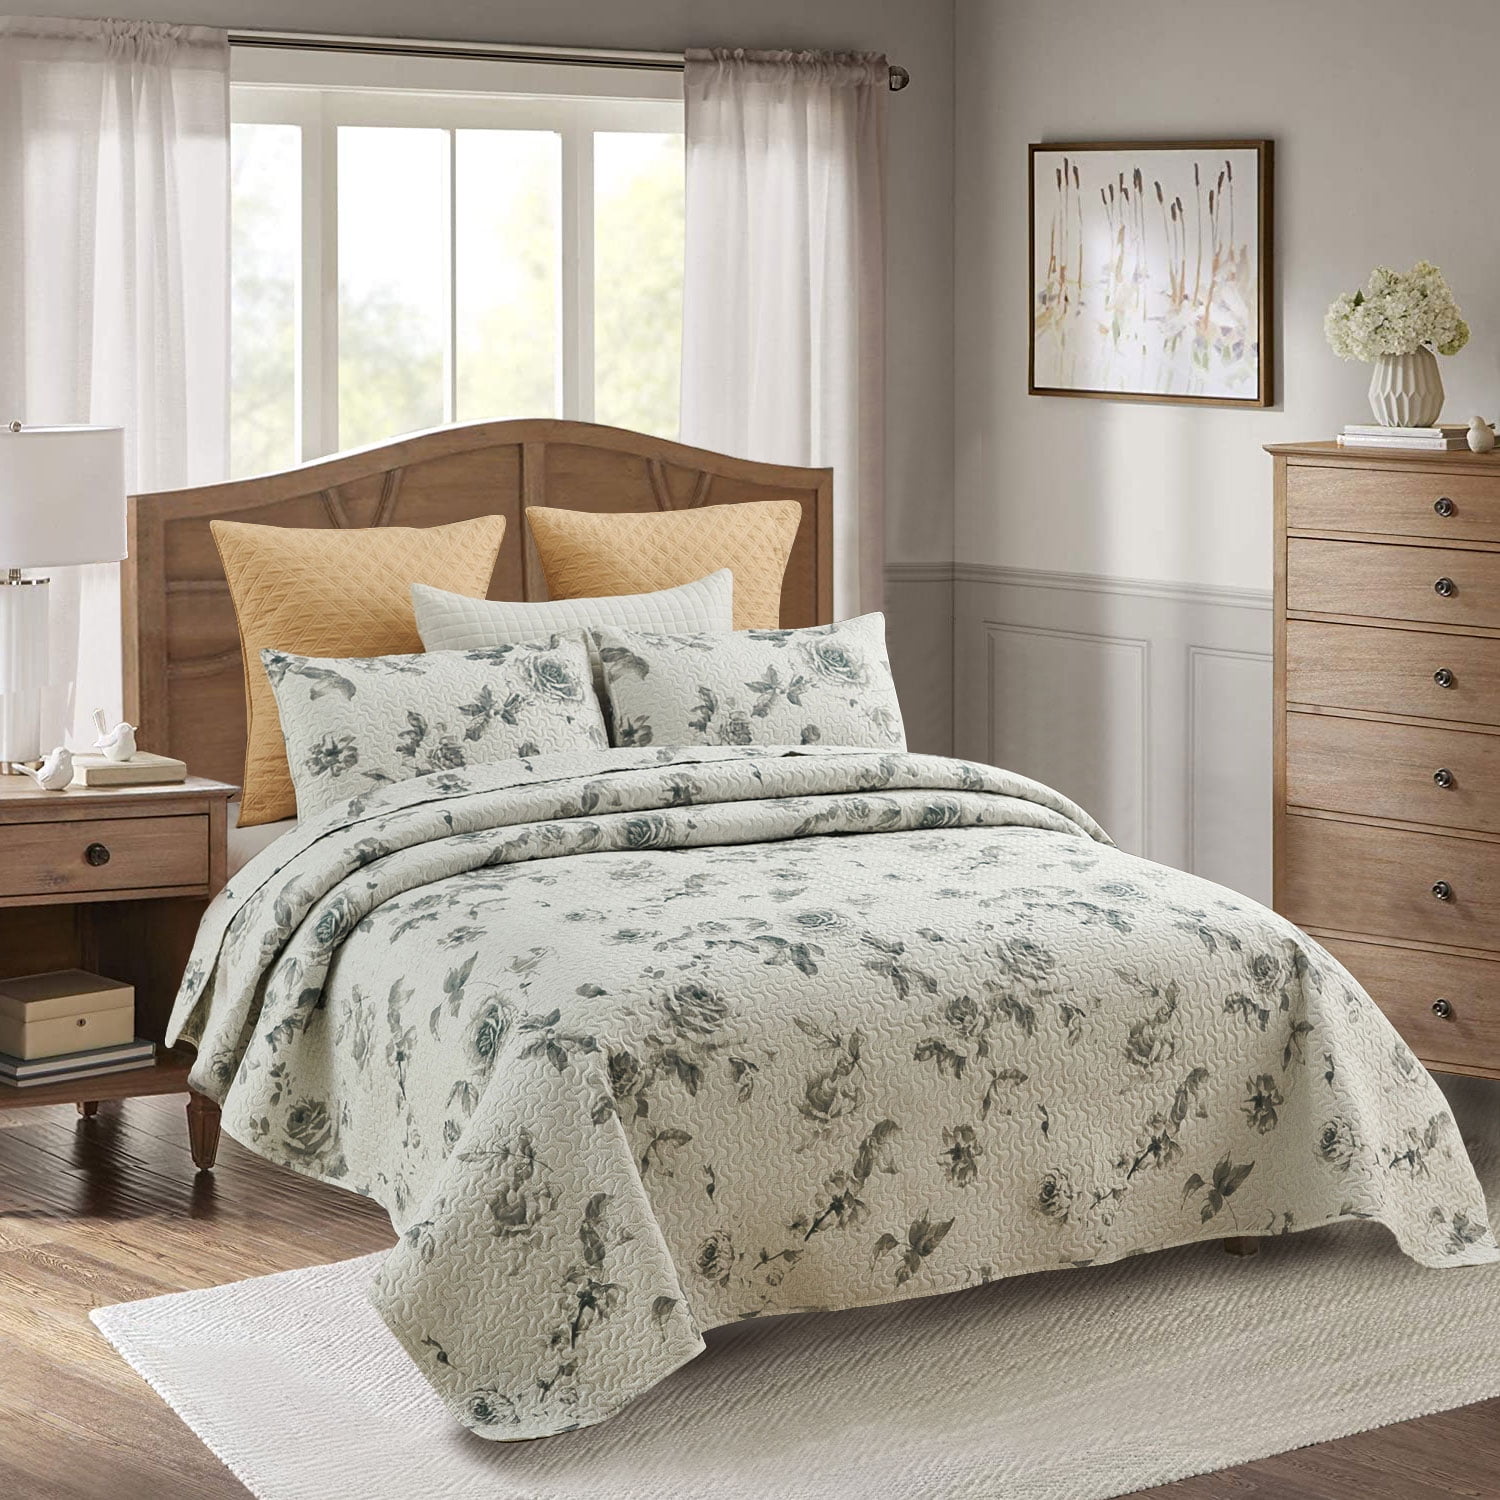 Details about   3-Piece Lightweight Stripe Quilt/Bedspread & Sham Bedding Set Green & Brown 